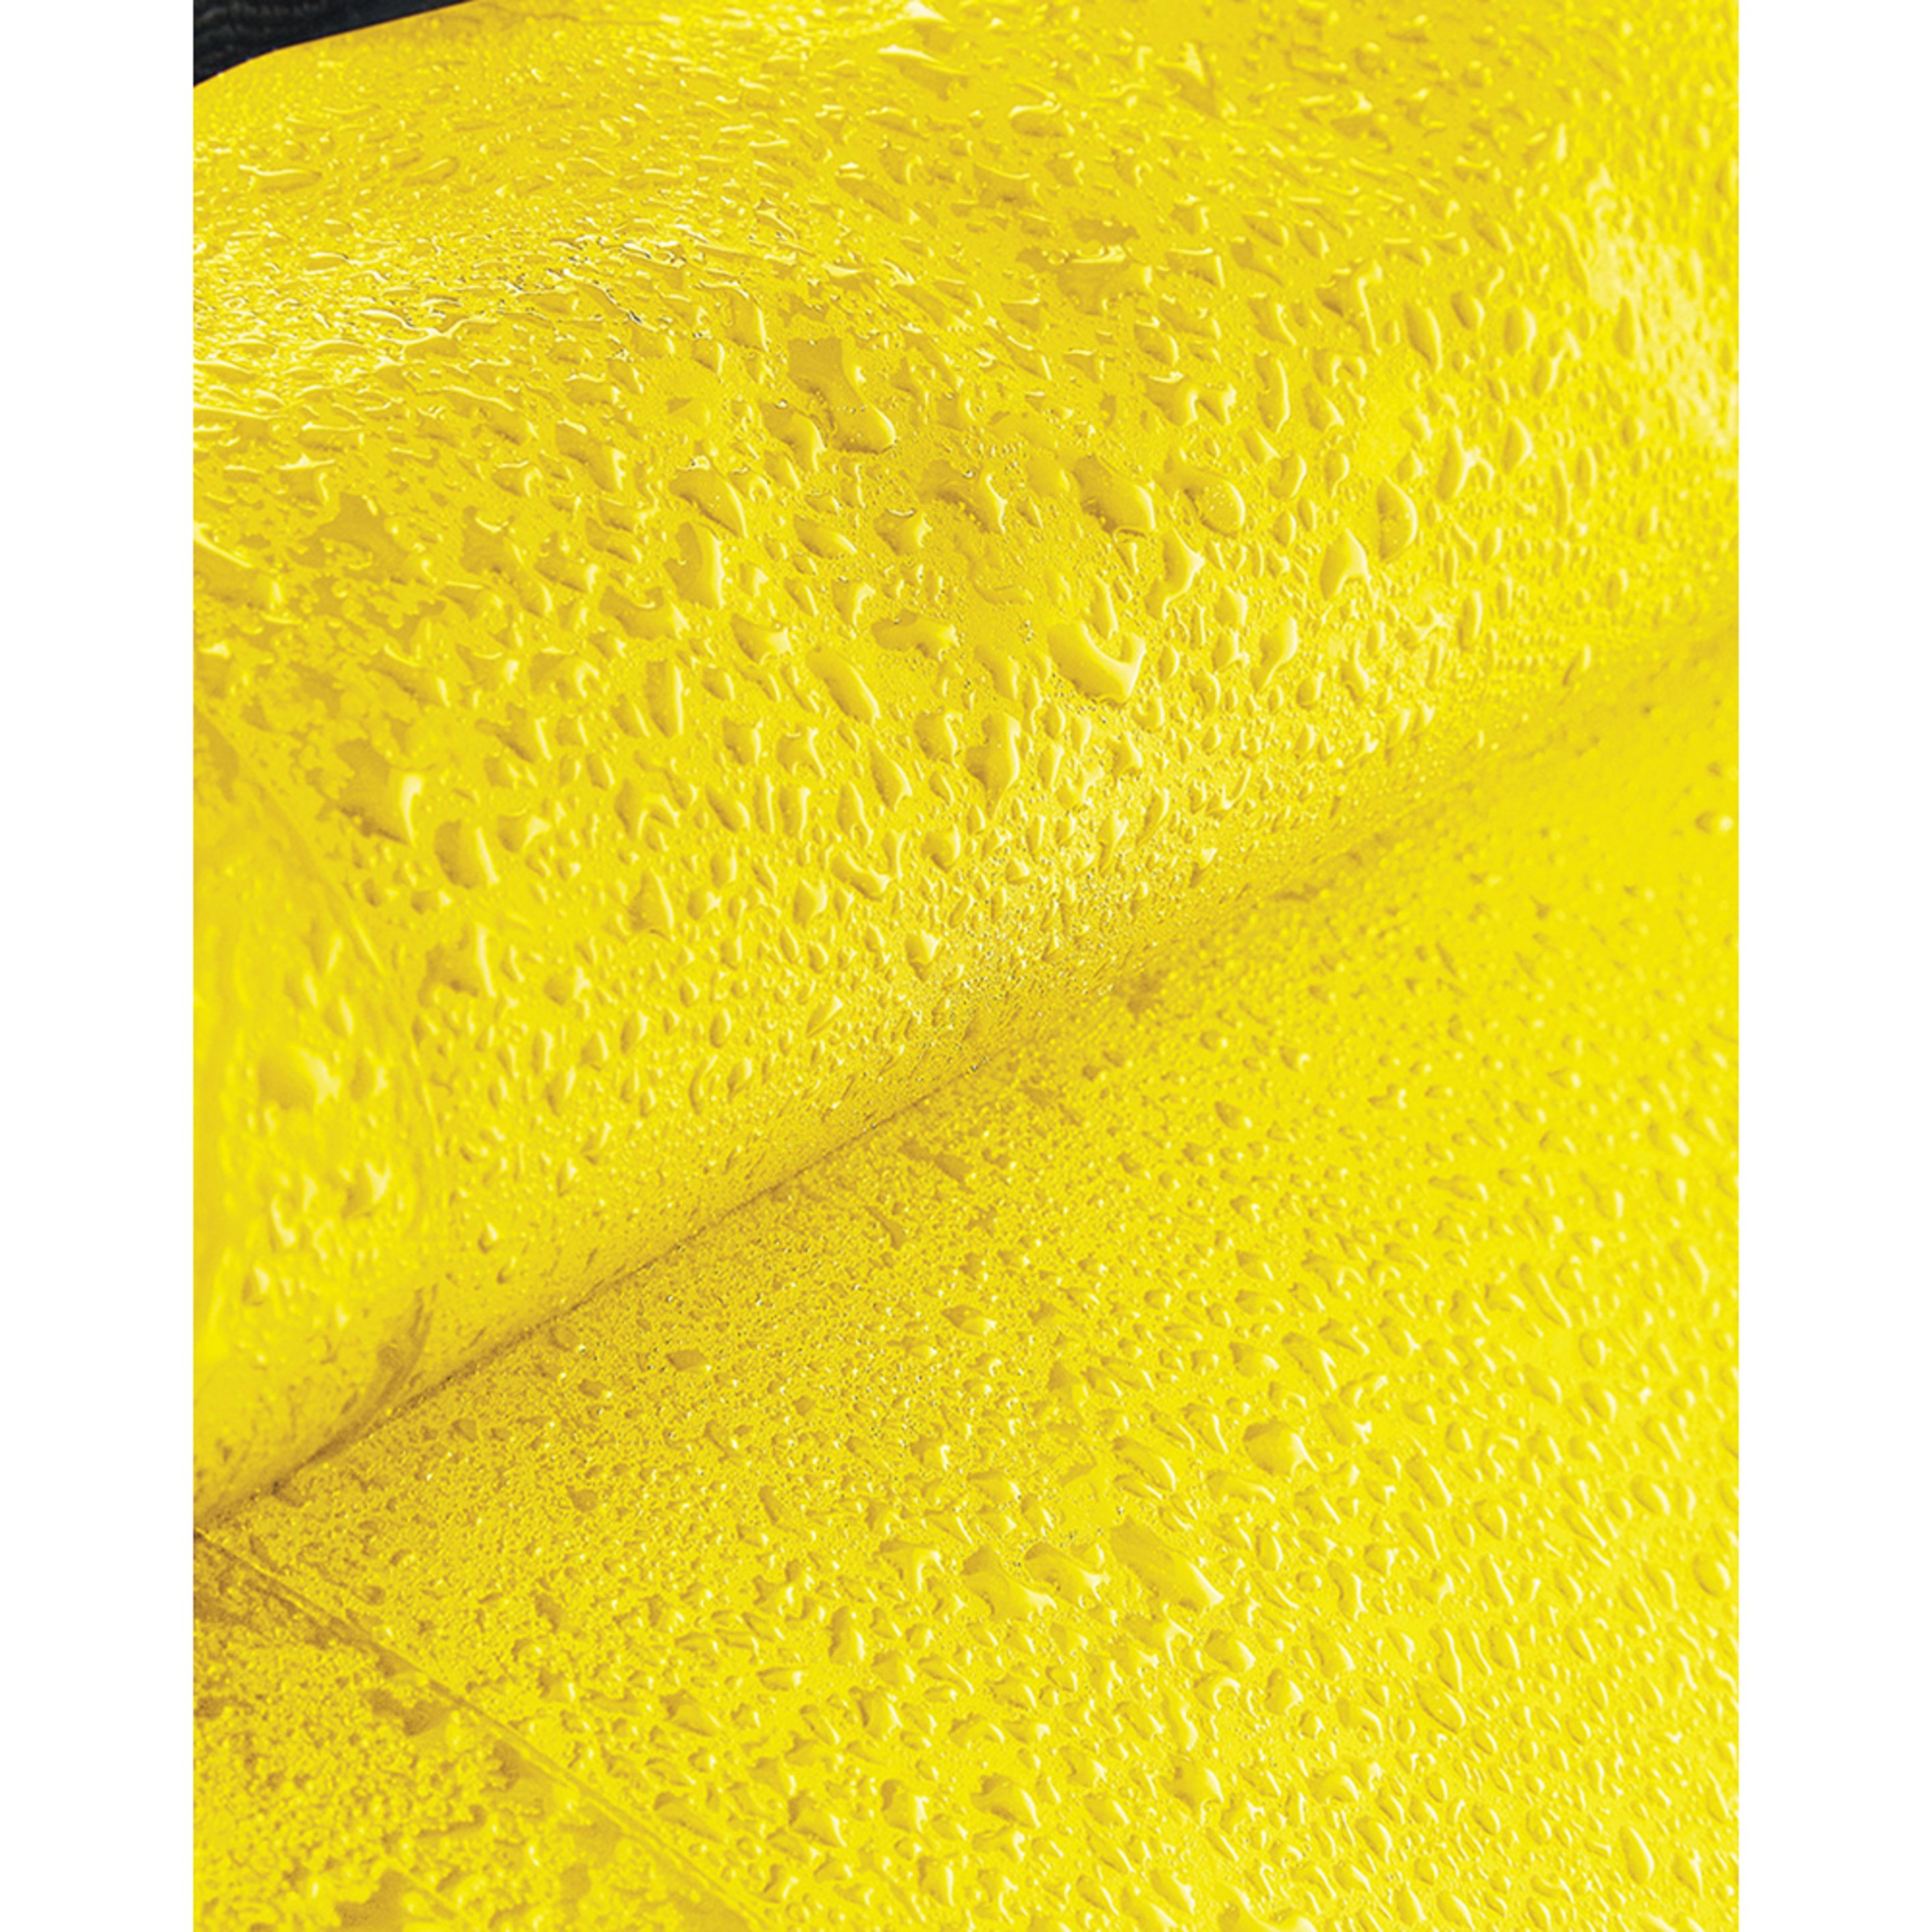 Mochila Impermeable De 25 Litros De Capacidad Modelo Submerge Quadra (Amarillo)